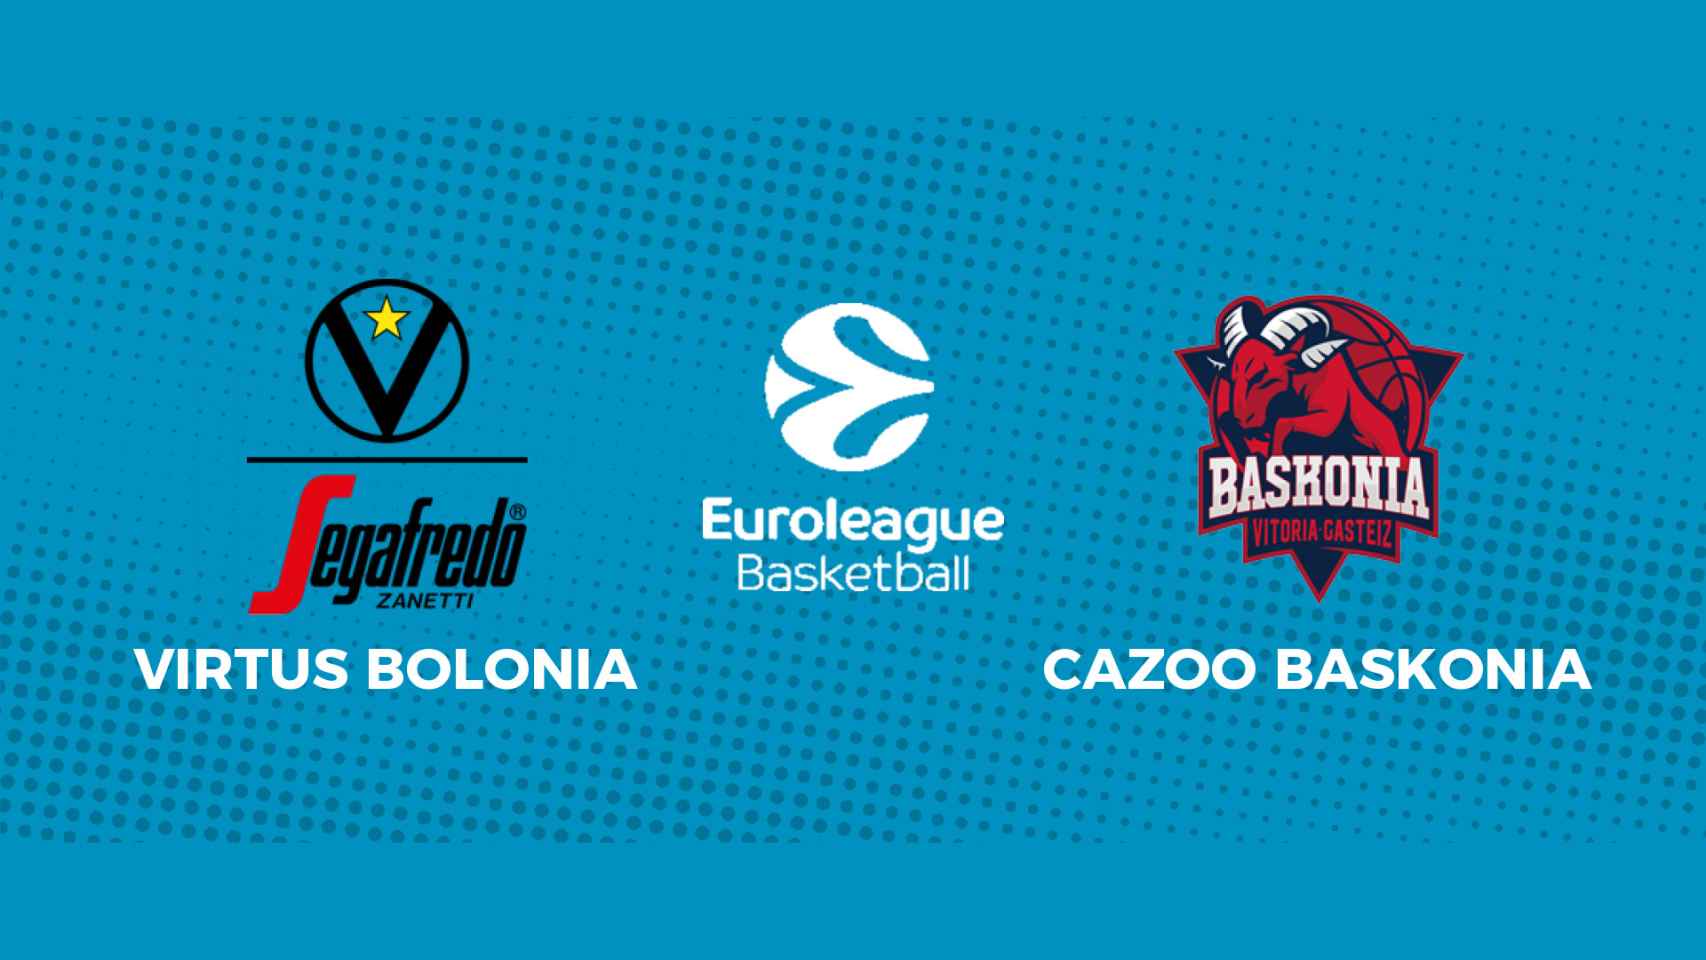 Virtus Bolonia - Baskonia, la Euroliga en directo